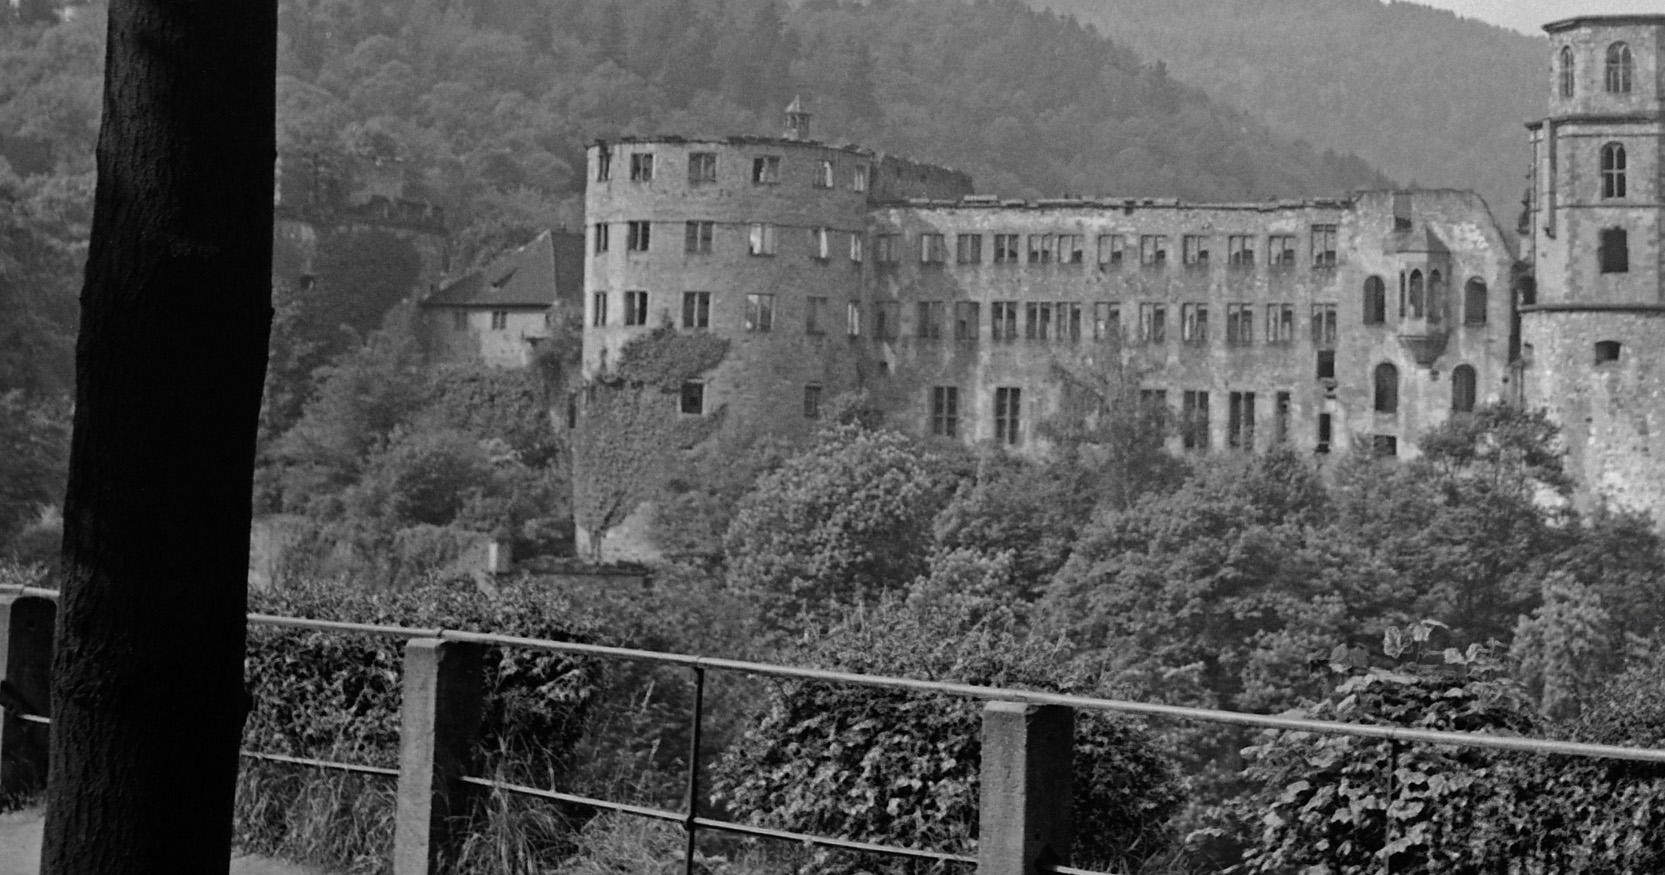 Grosse Scheffelterrasse terrace to Castle, Heidelberg Germany 1938, PrintedLater - Photograph by Karl Heinrich Lämmel